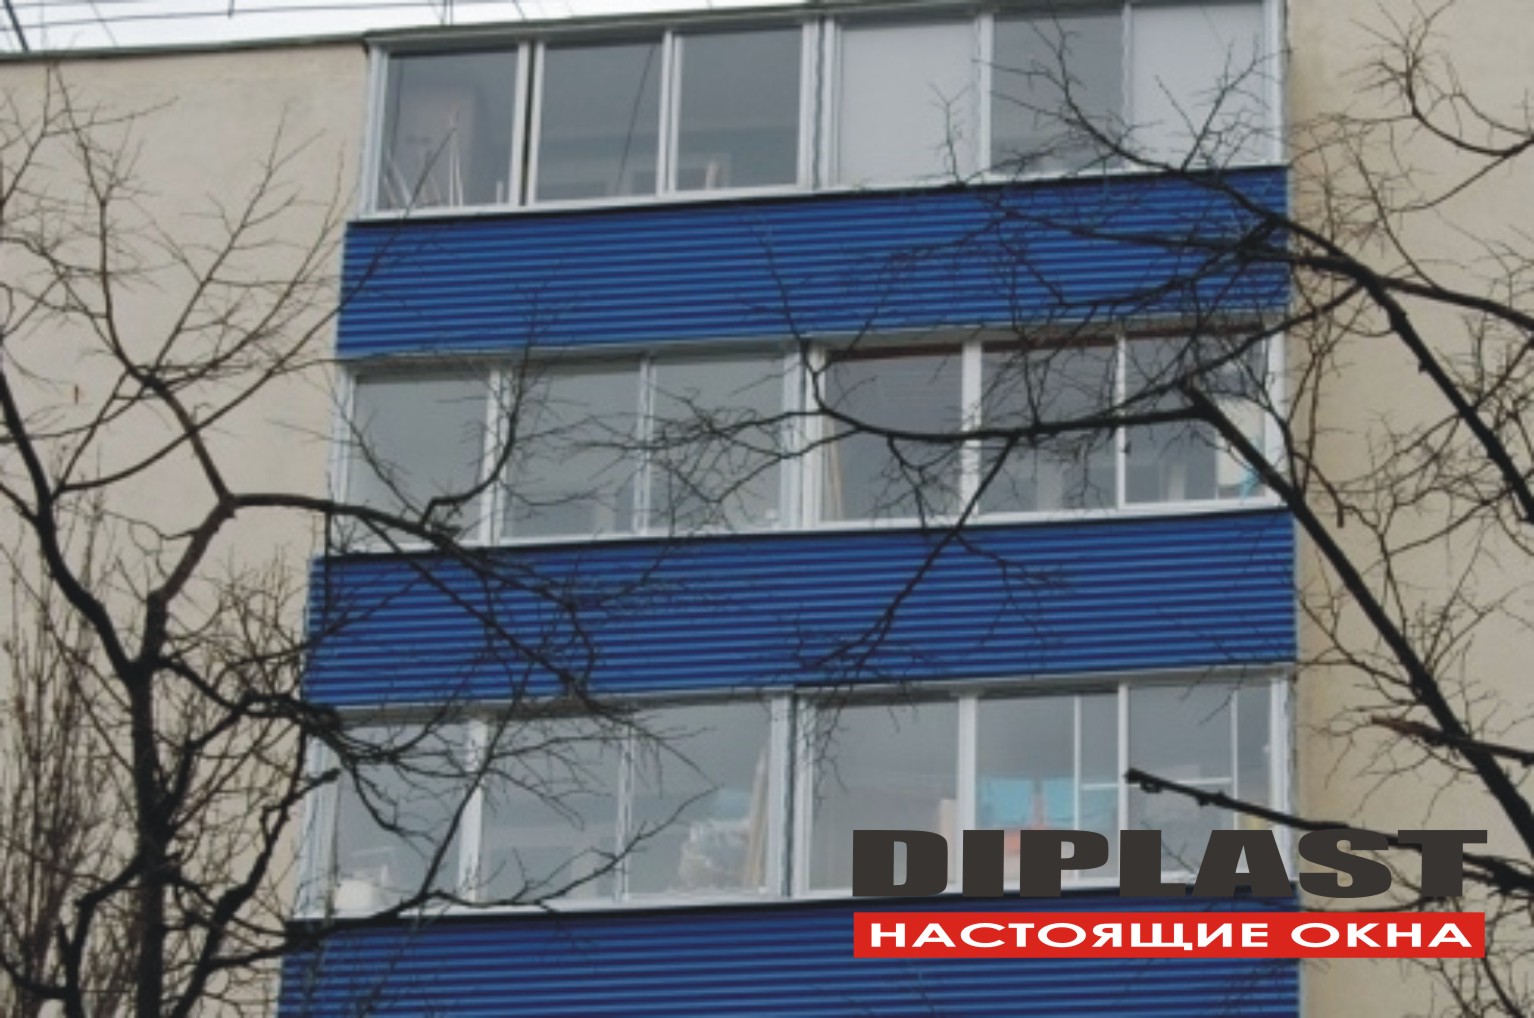 Реконструкция жилого микрорайона, алюминиевые лоджии произведены компанией Дипласт Инж